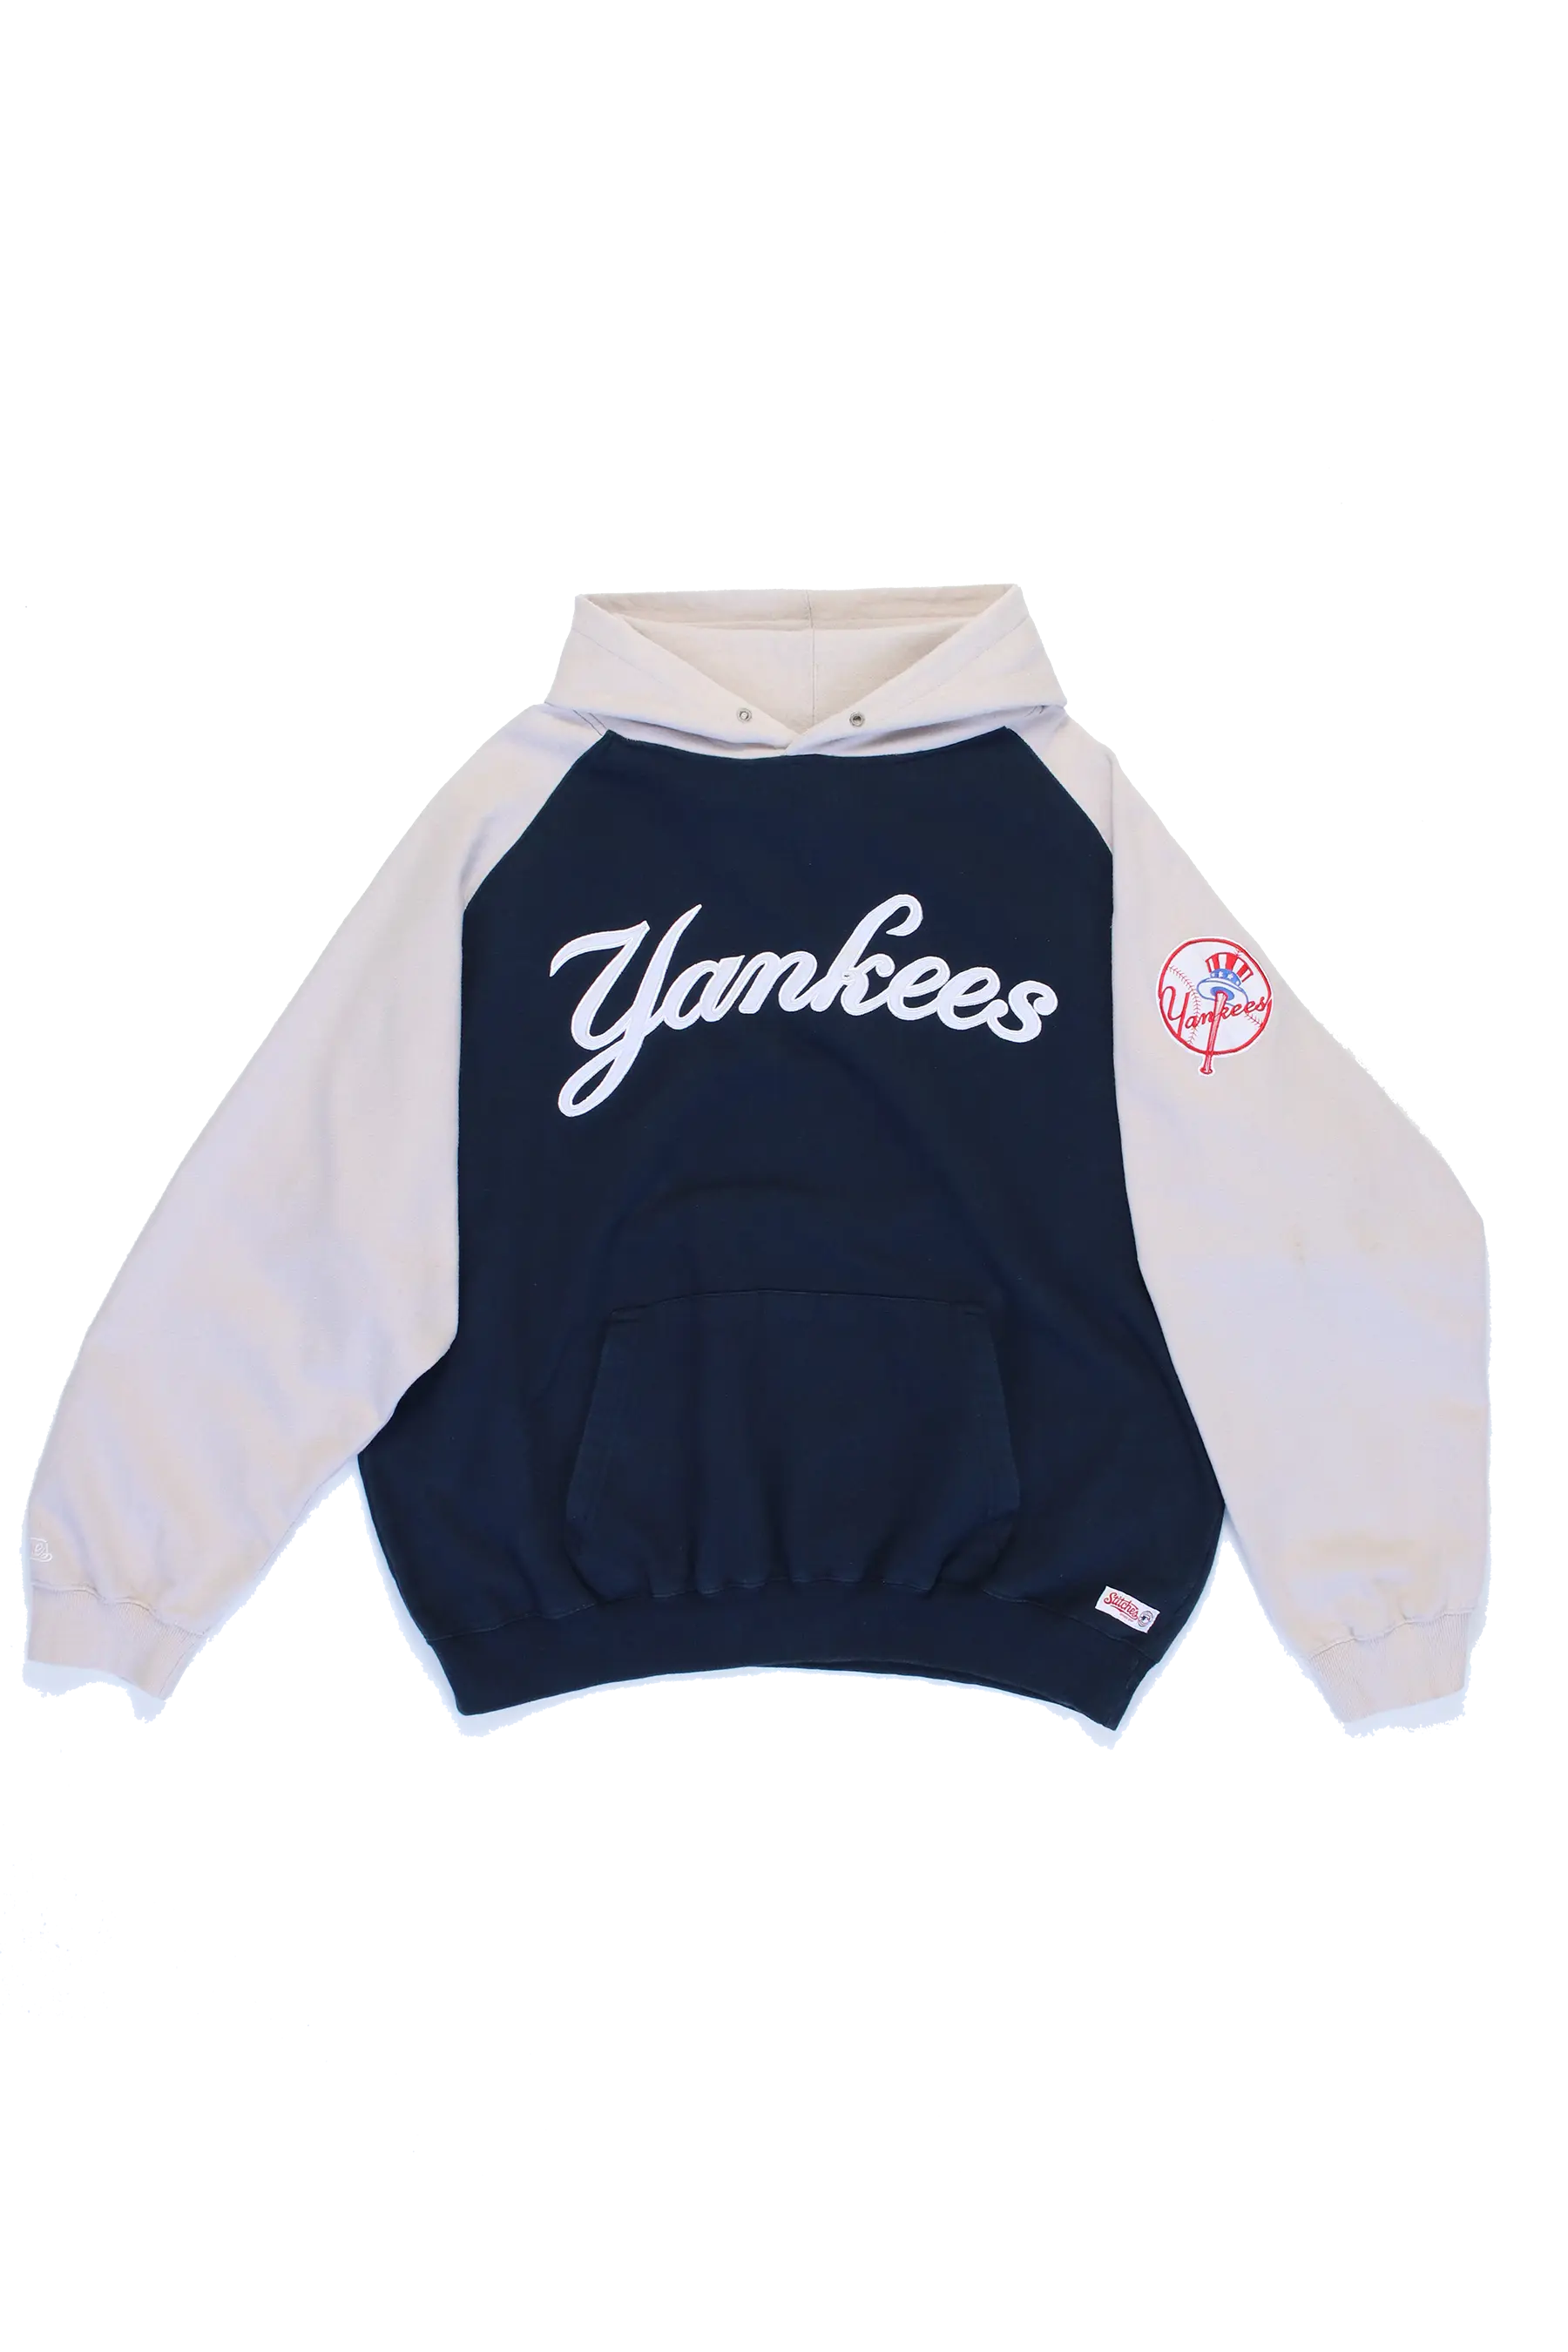 NY Yankees Hoodie